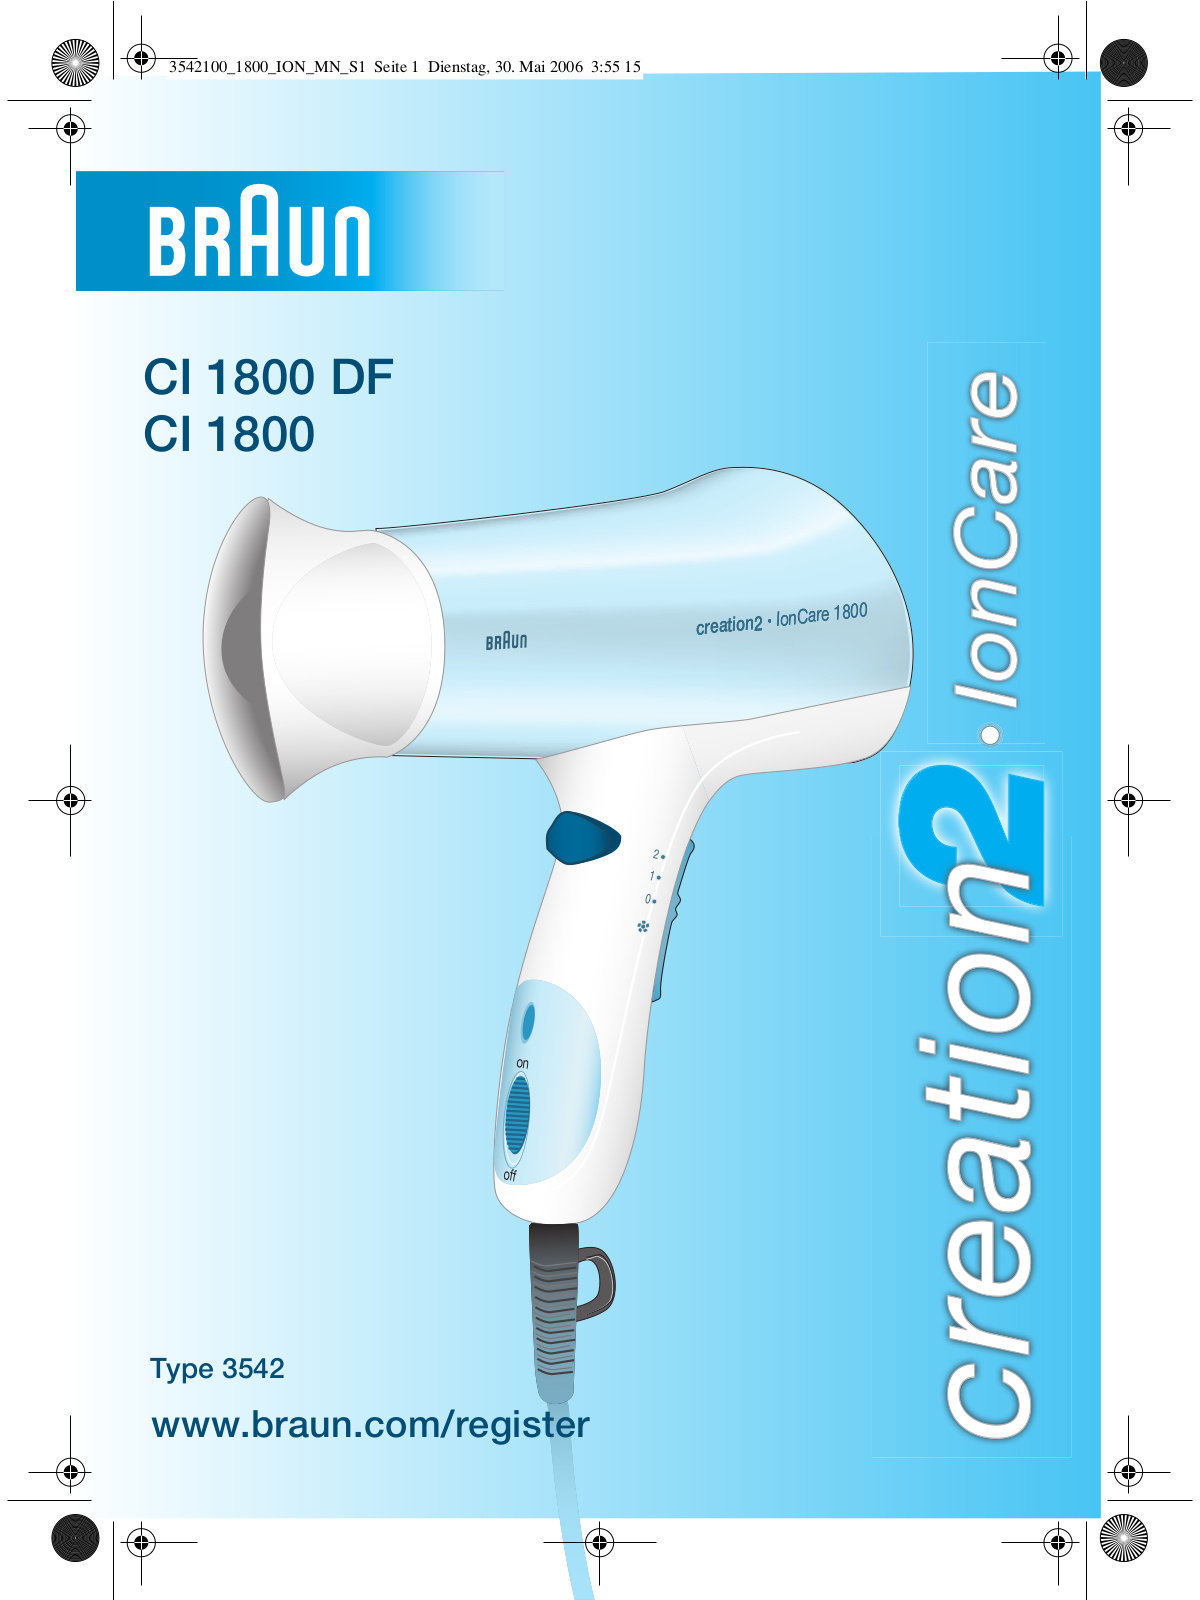 Braun CI 1800, CI 1800 DF User Manual